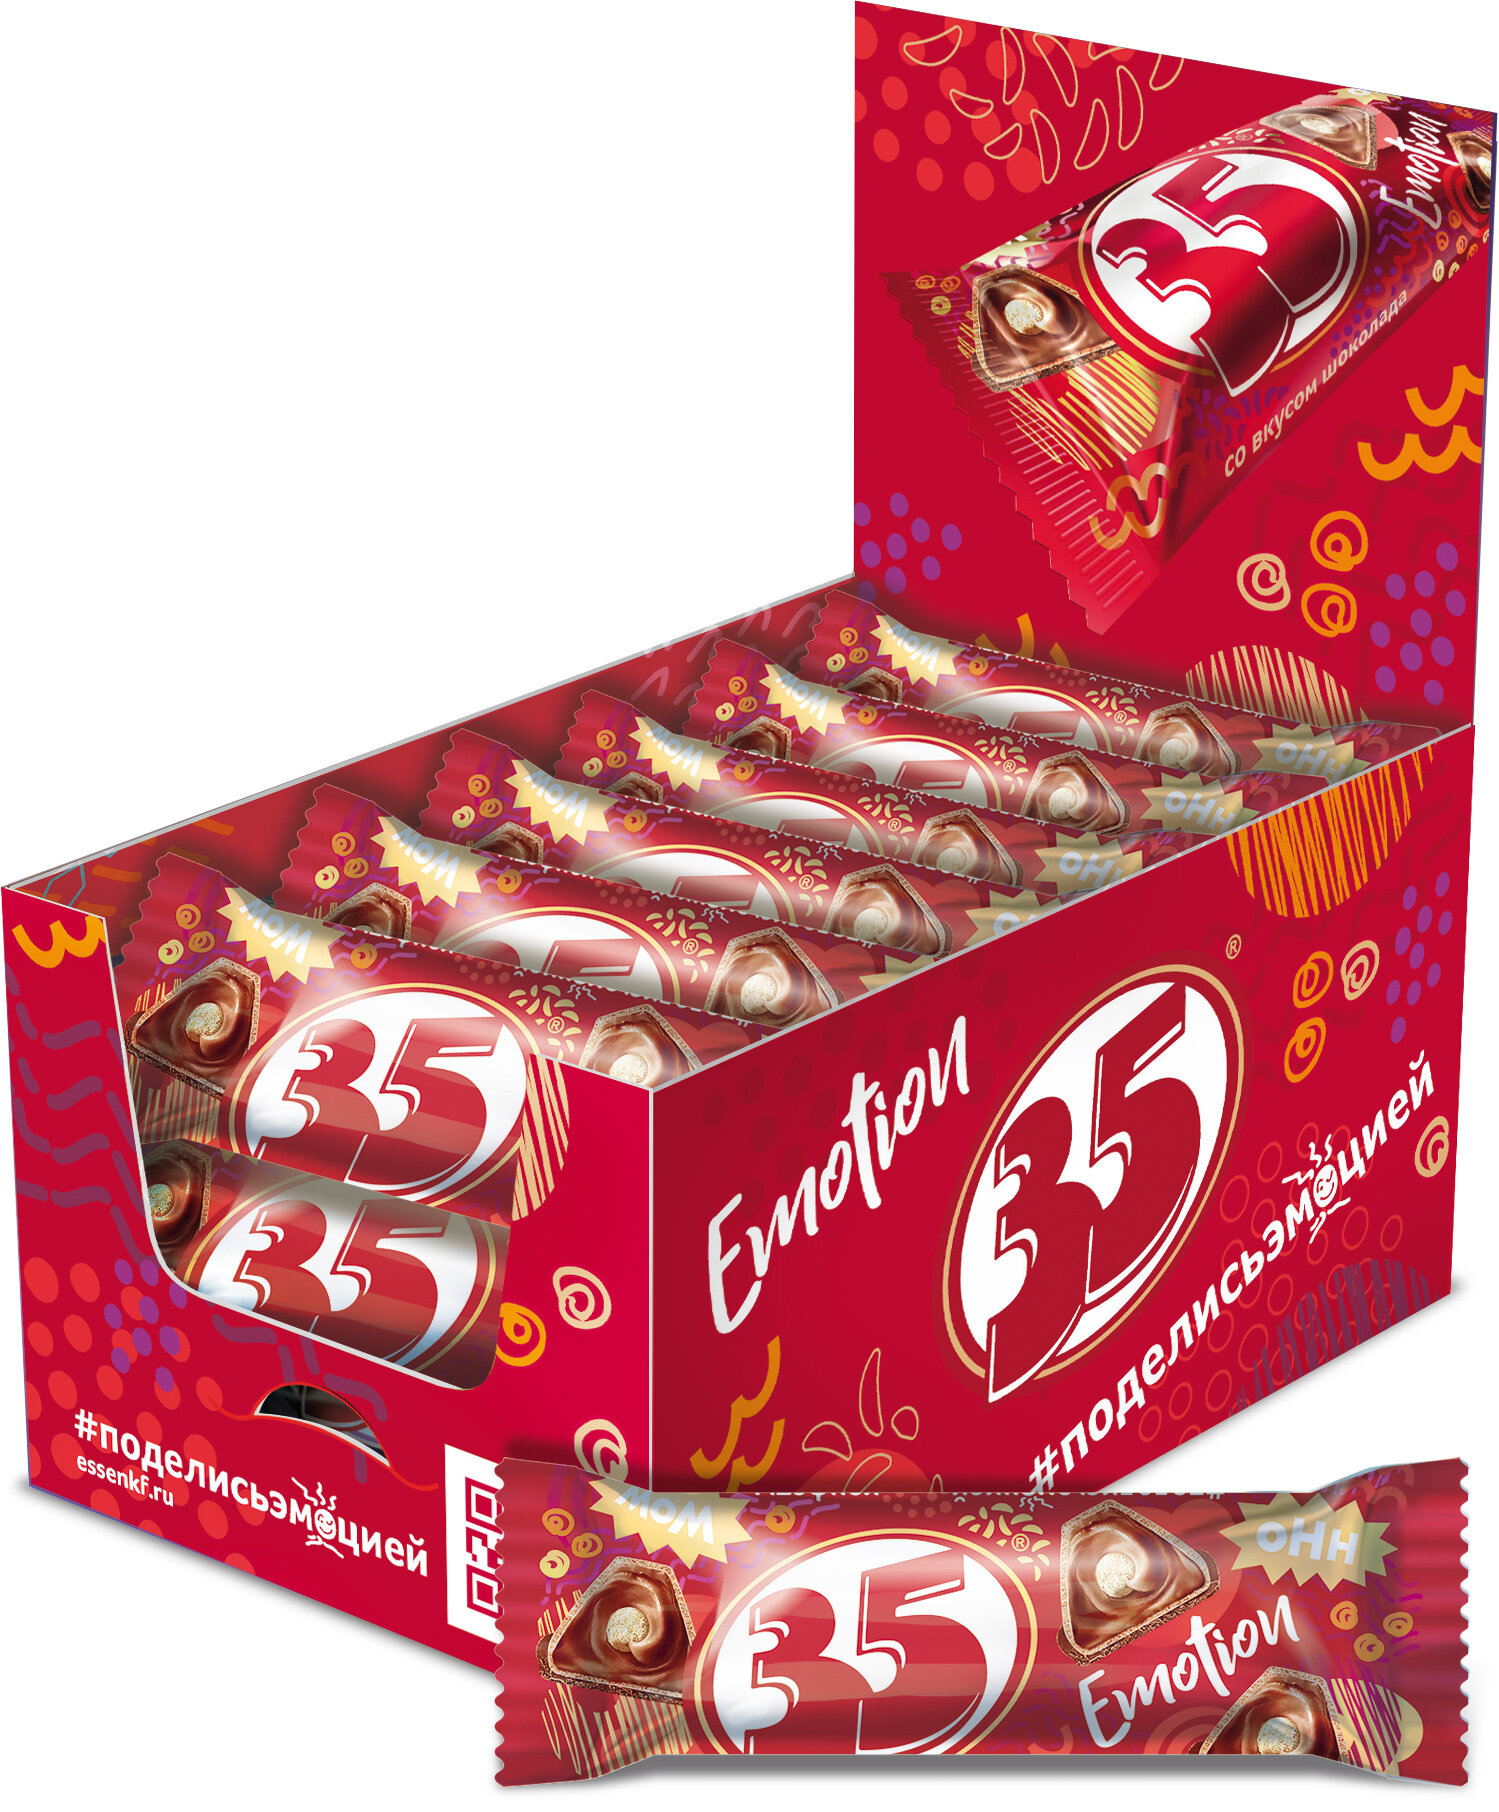 Вафельные конфеты 35 со вкусом шоколада, шоубокс 25 шт. х 20 гр. (500гр.)